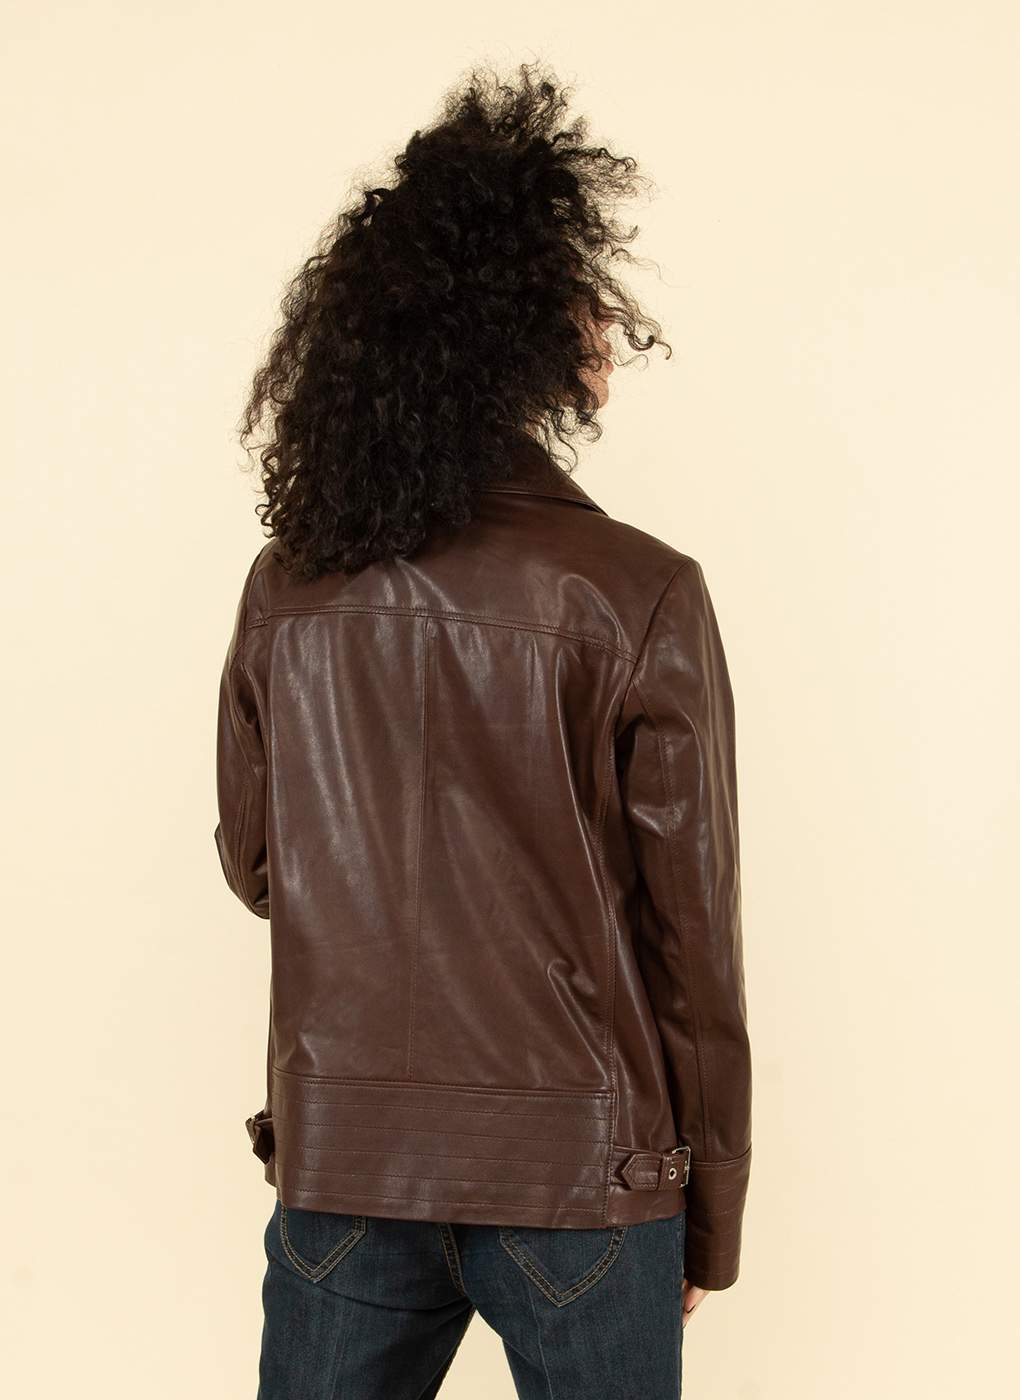 Кожаная куртка женская Каляев 55130 коричневая 48 RU